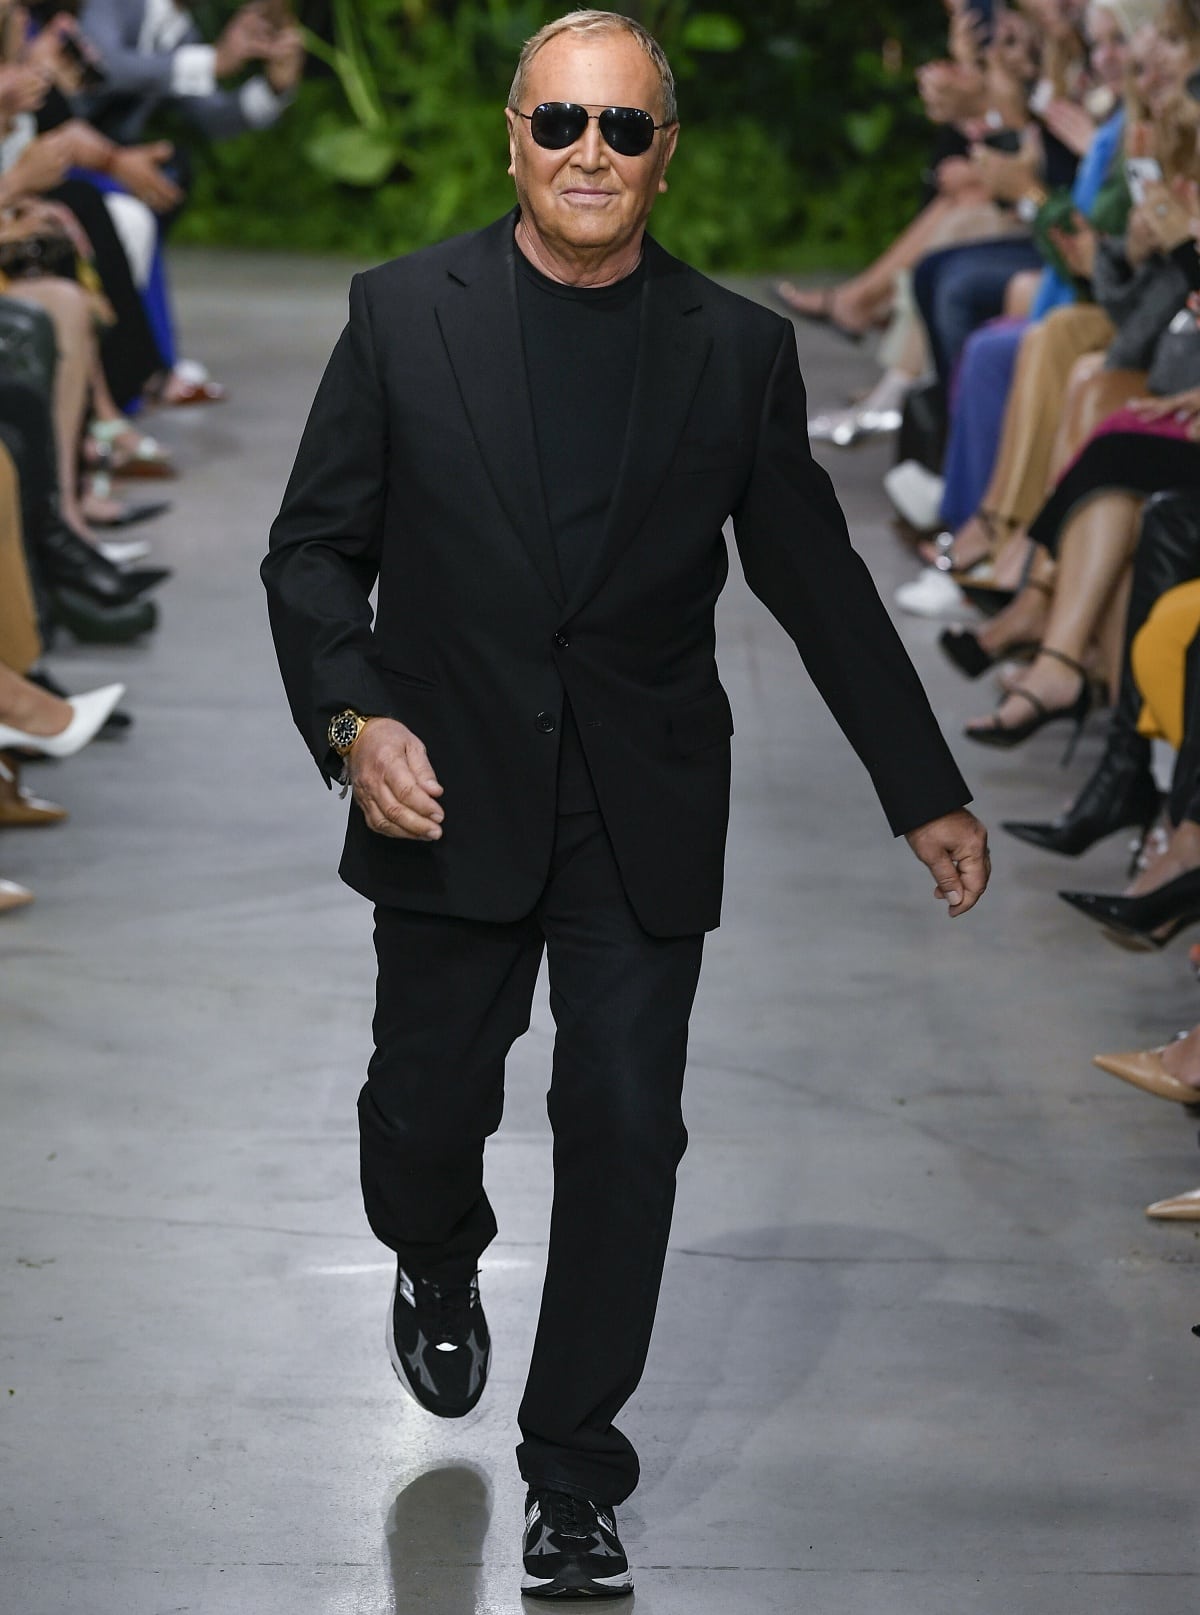 What Is Jean-Paul Gaultier's Net Worth In 2022?